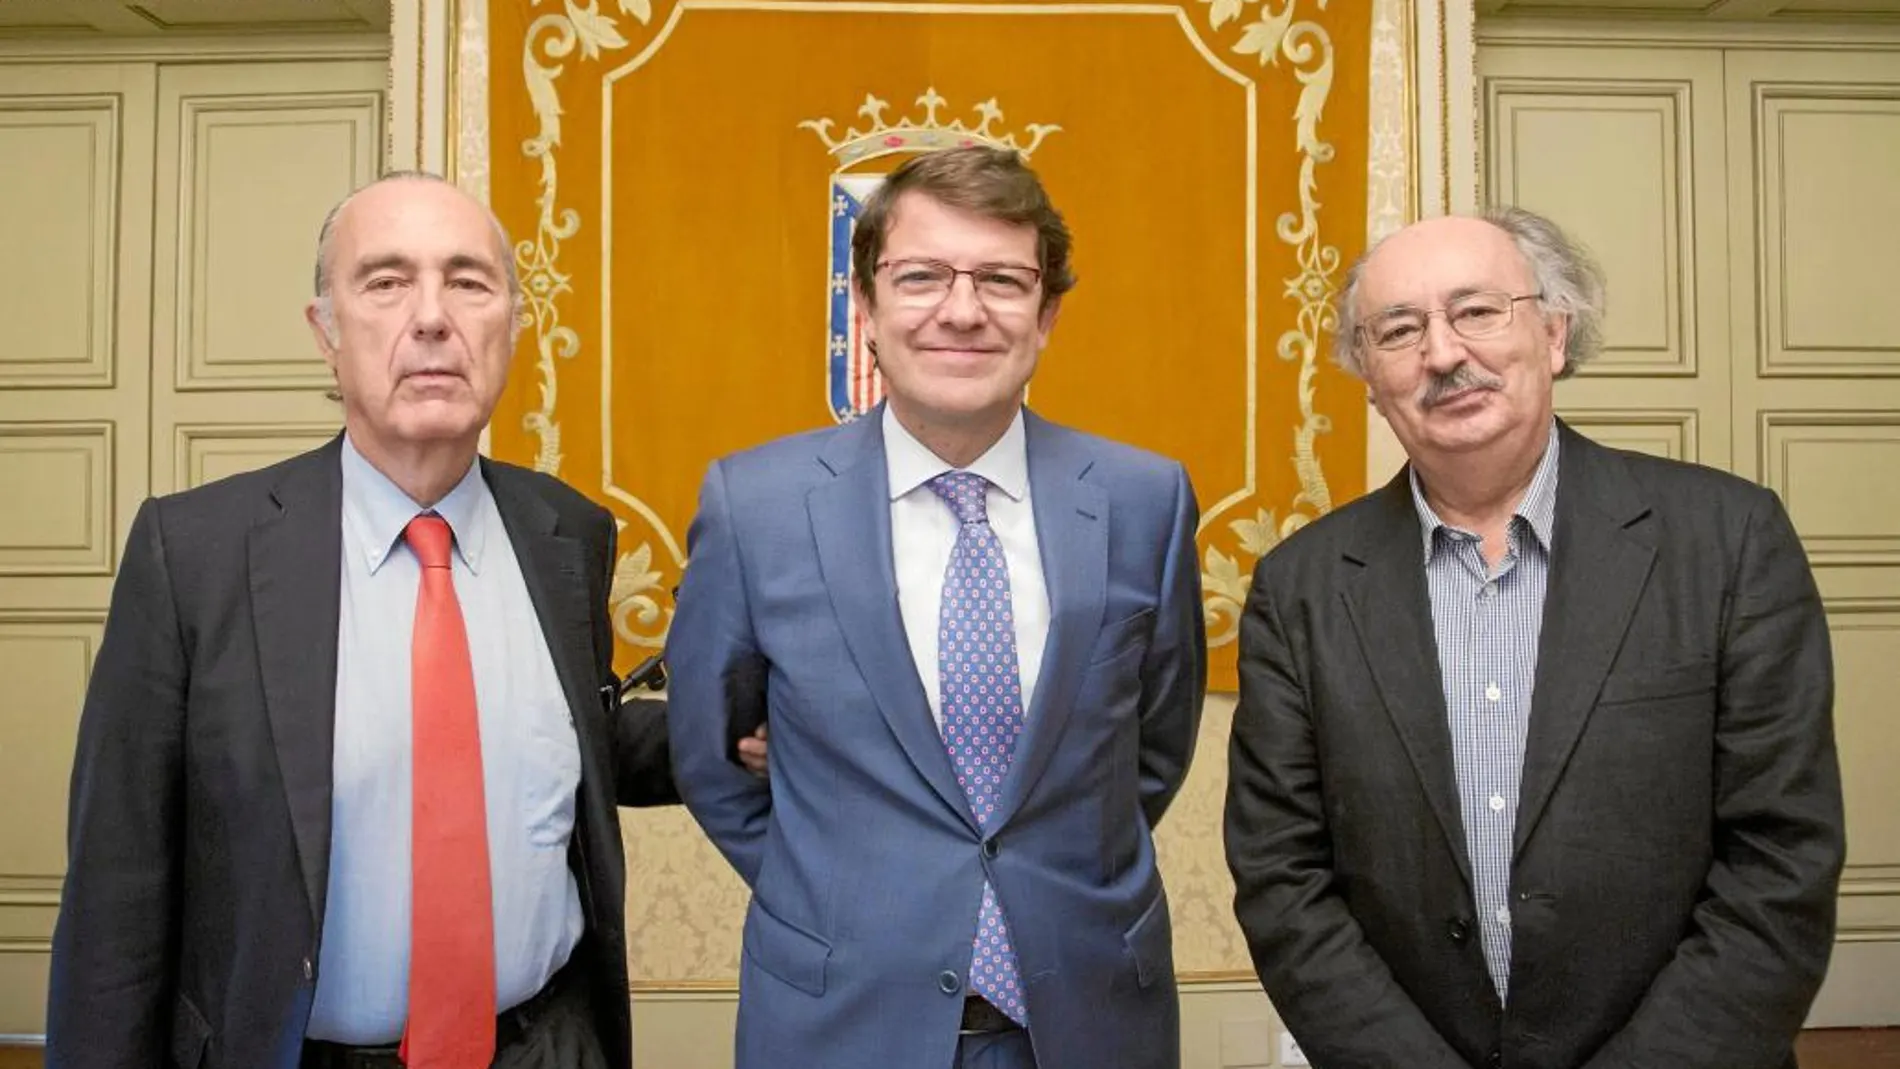 Los dos presidentes del jurado, Luis Alberto de Cuenca y Antonio Colinas, junto al alcalde Alfonso Fernández Mañueco